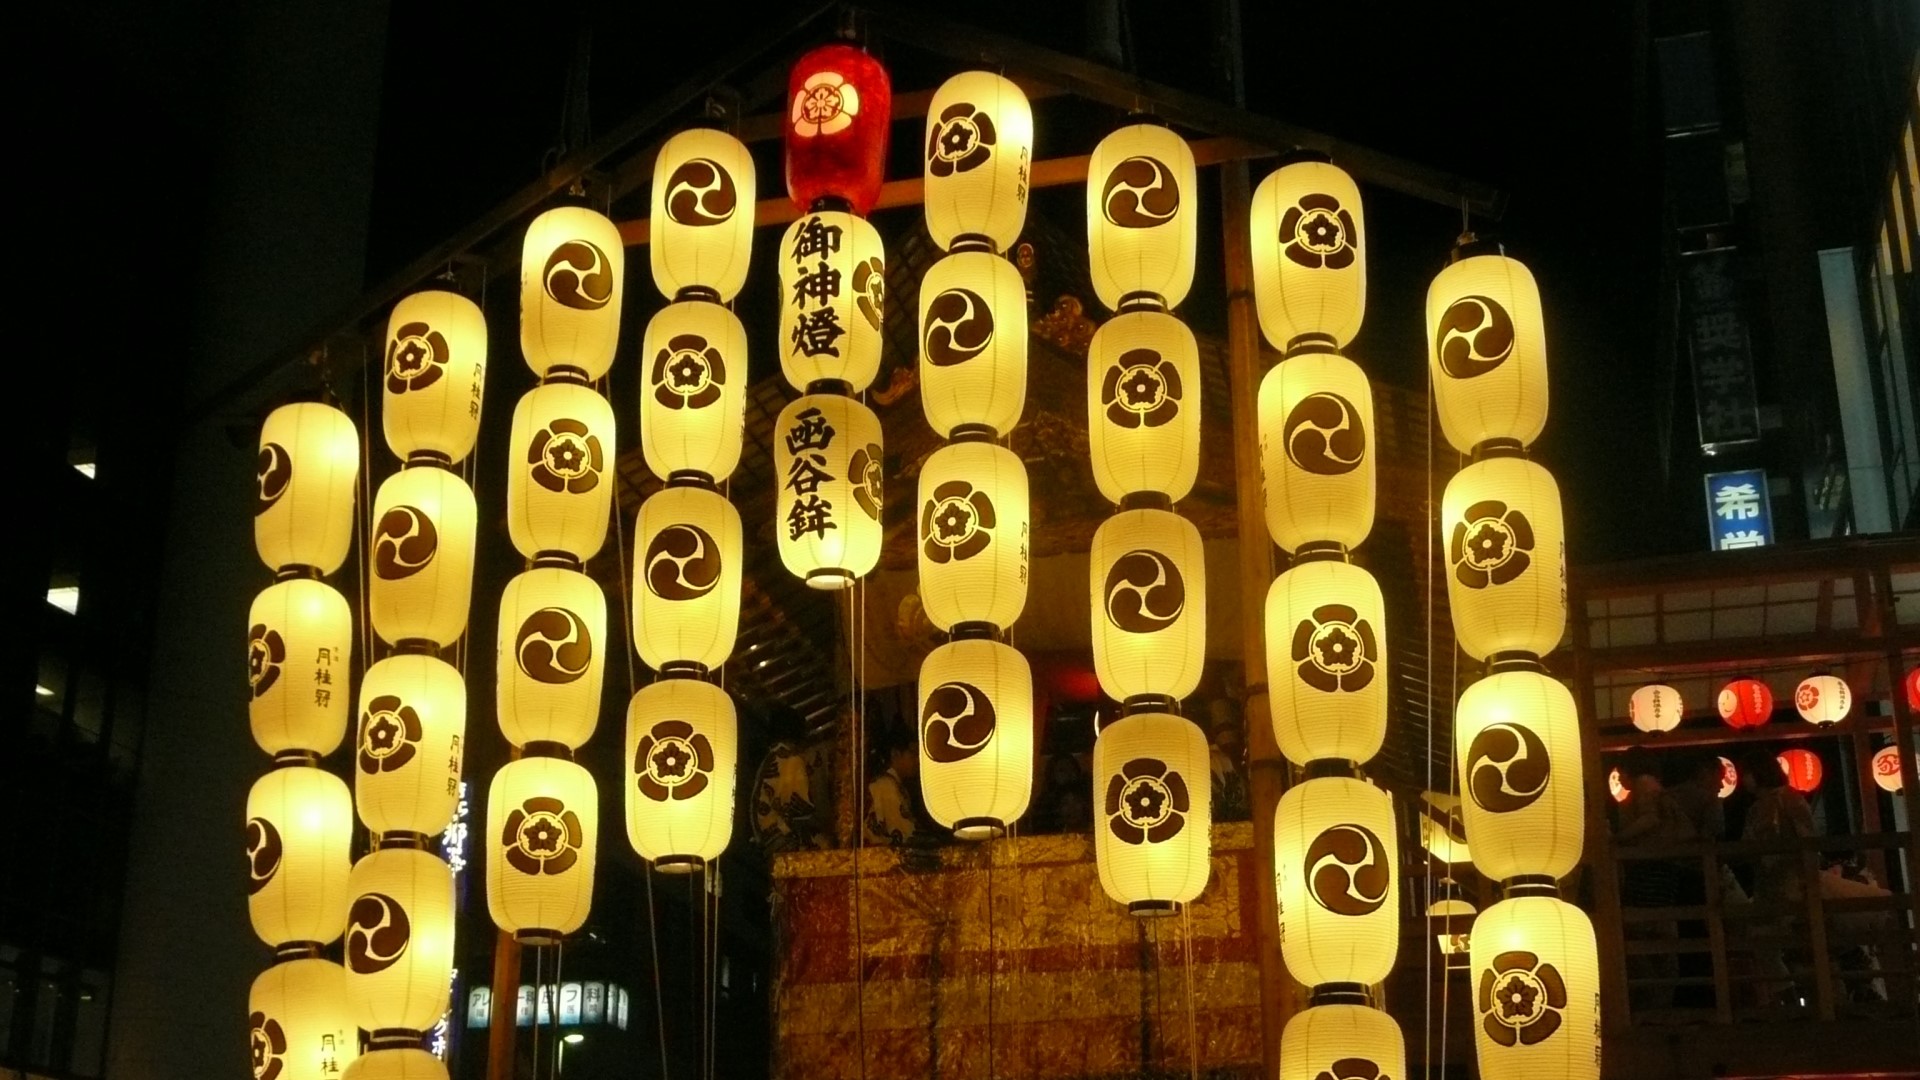 祇園祭／コンコンチキチン、コンチキチン。祇園囃子の音色とともに7月の京都は祇園祭一色となります。